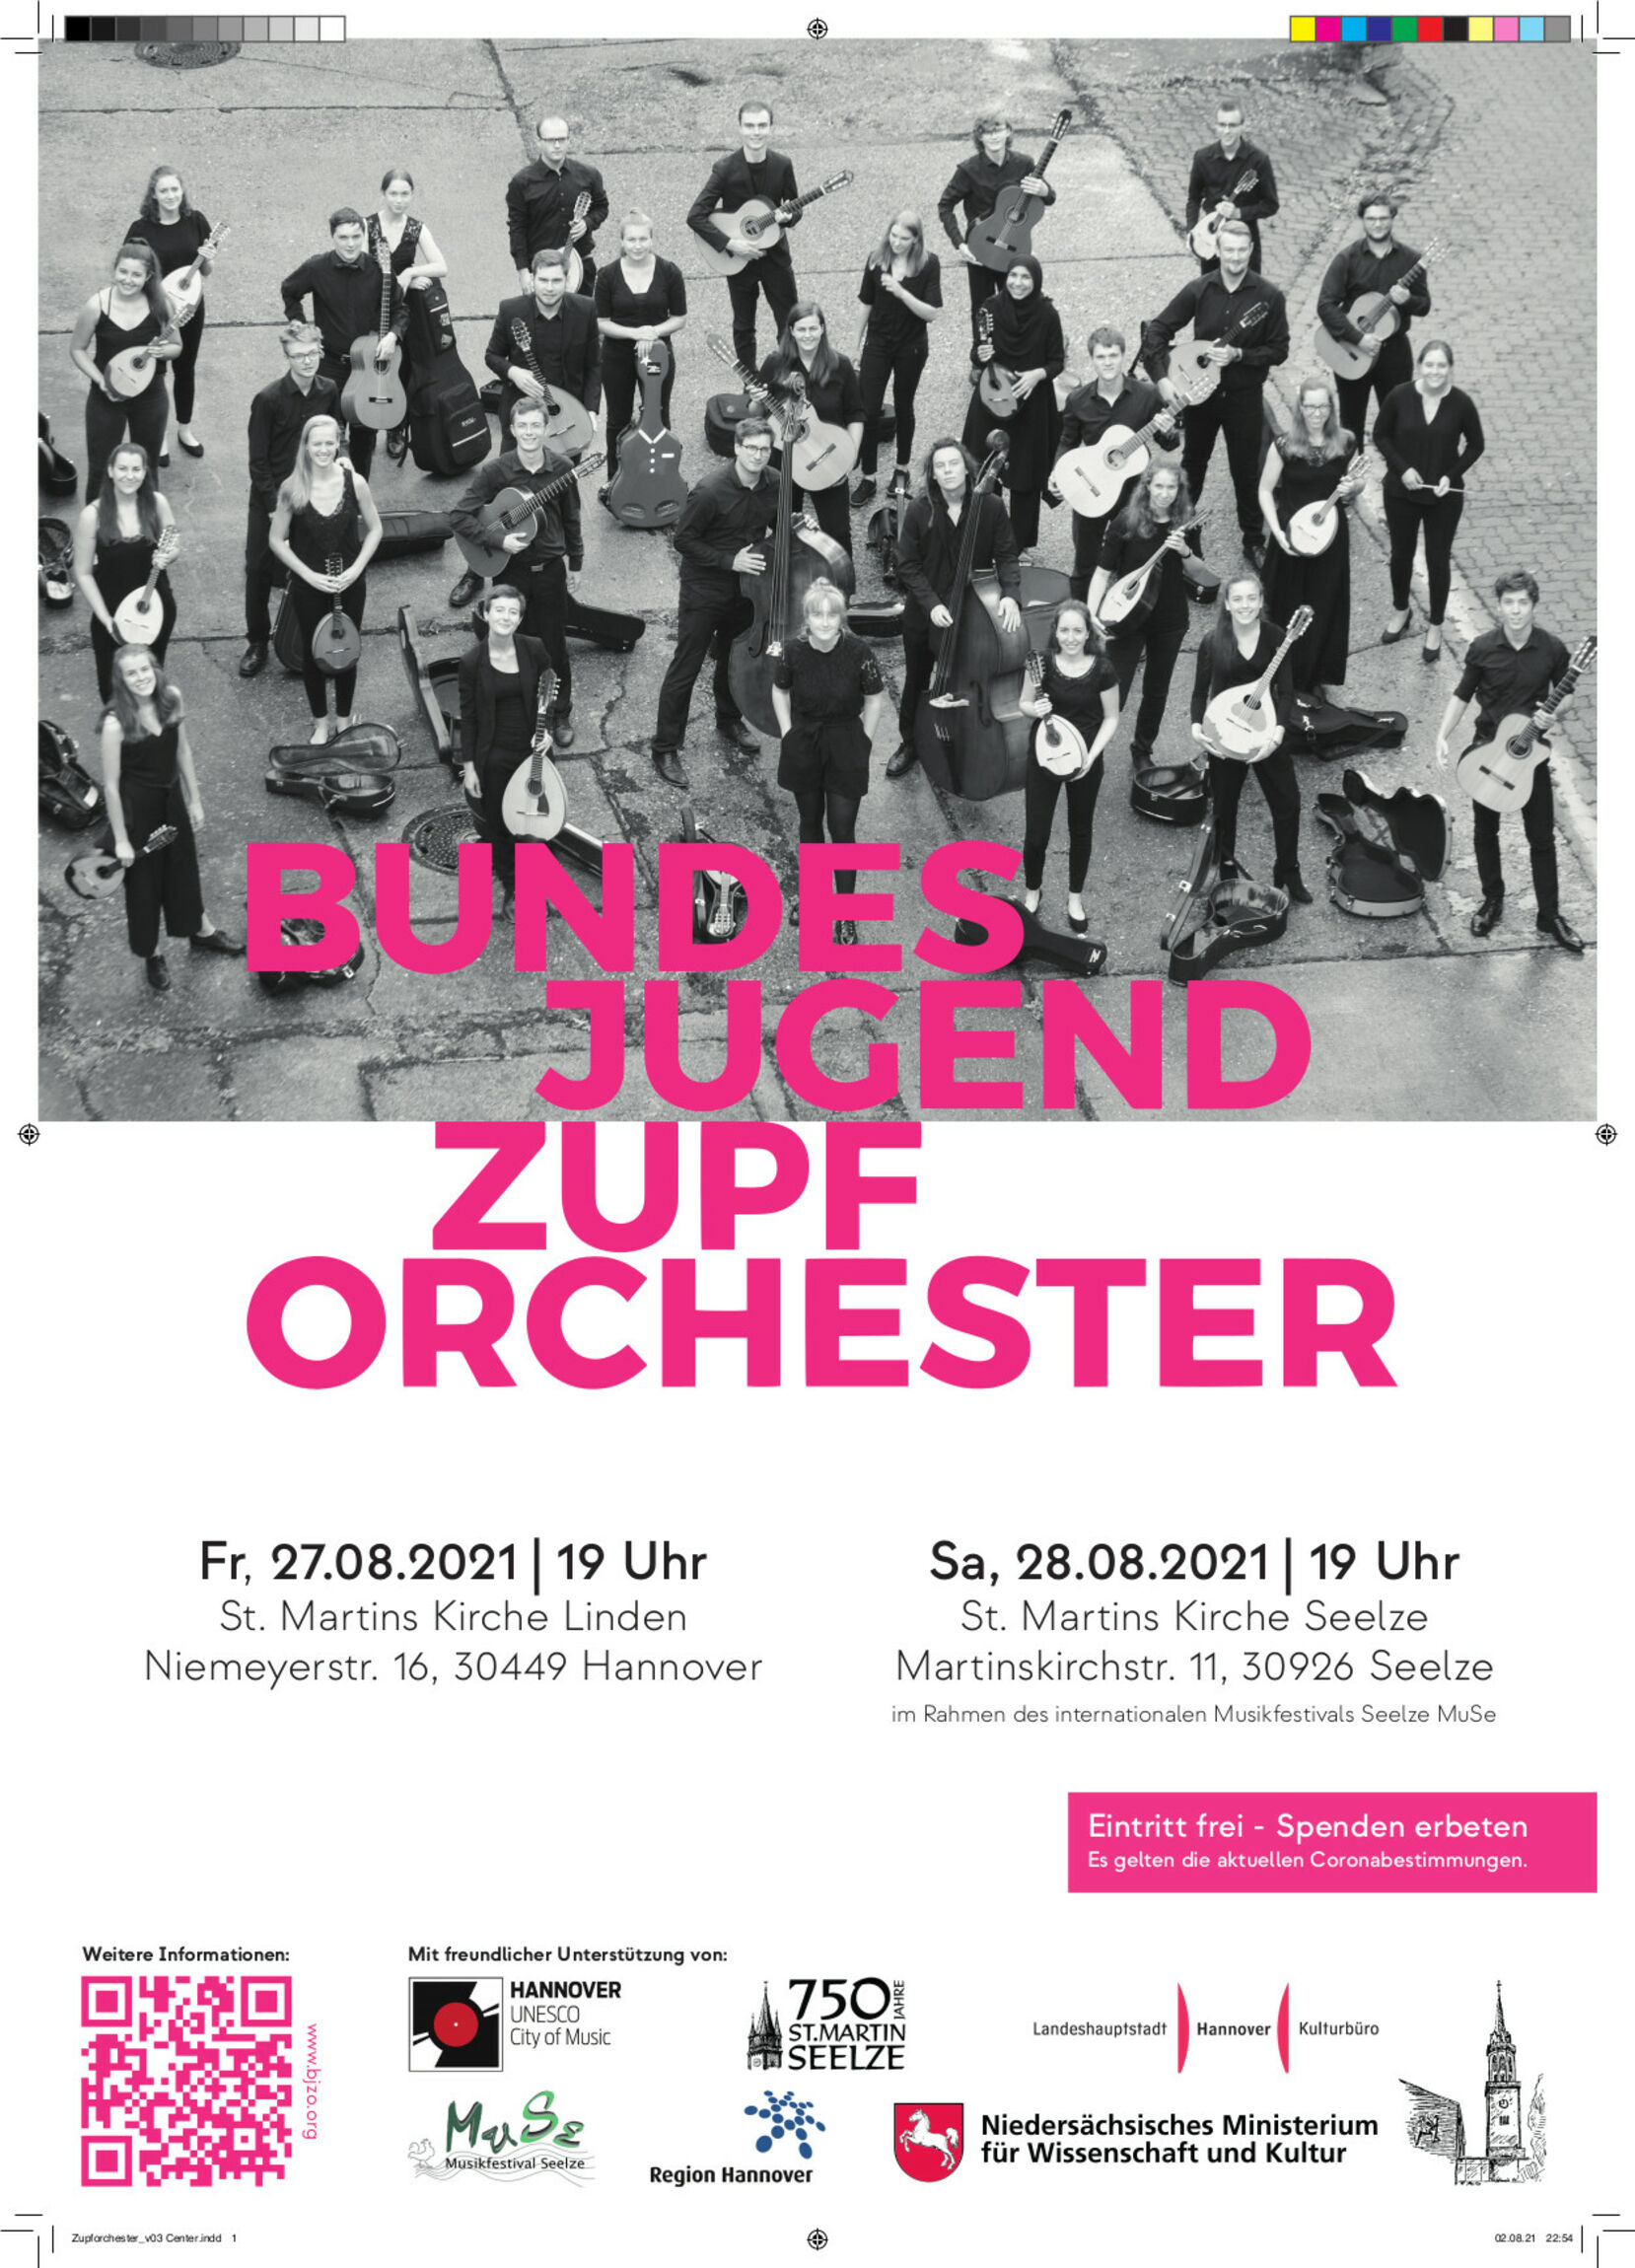 Bundesjugendzupforchester - Konzert 27.08.2021